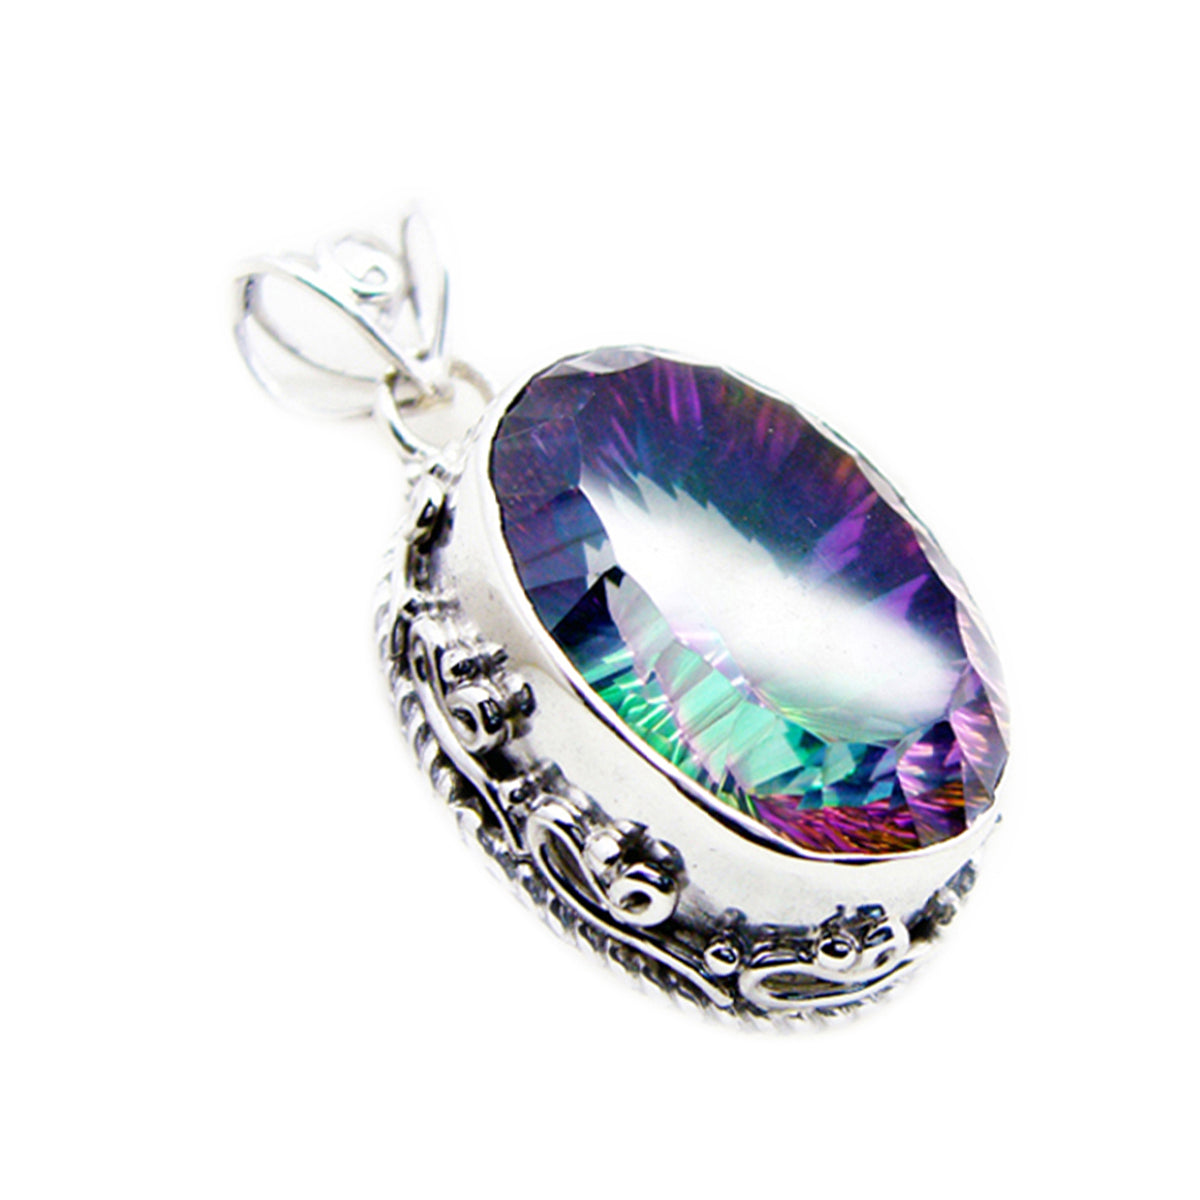 Riyo belle pierre précieuse ovale à facettes multicolore quartz mystique 1172 pendentif en argent sterling cadeau pour petite amie